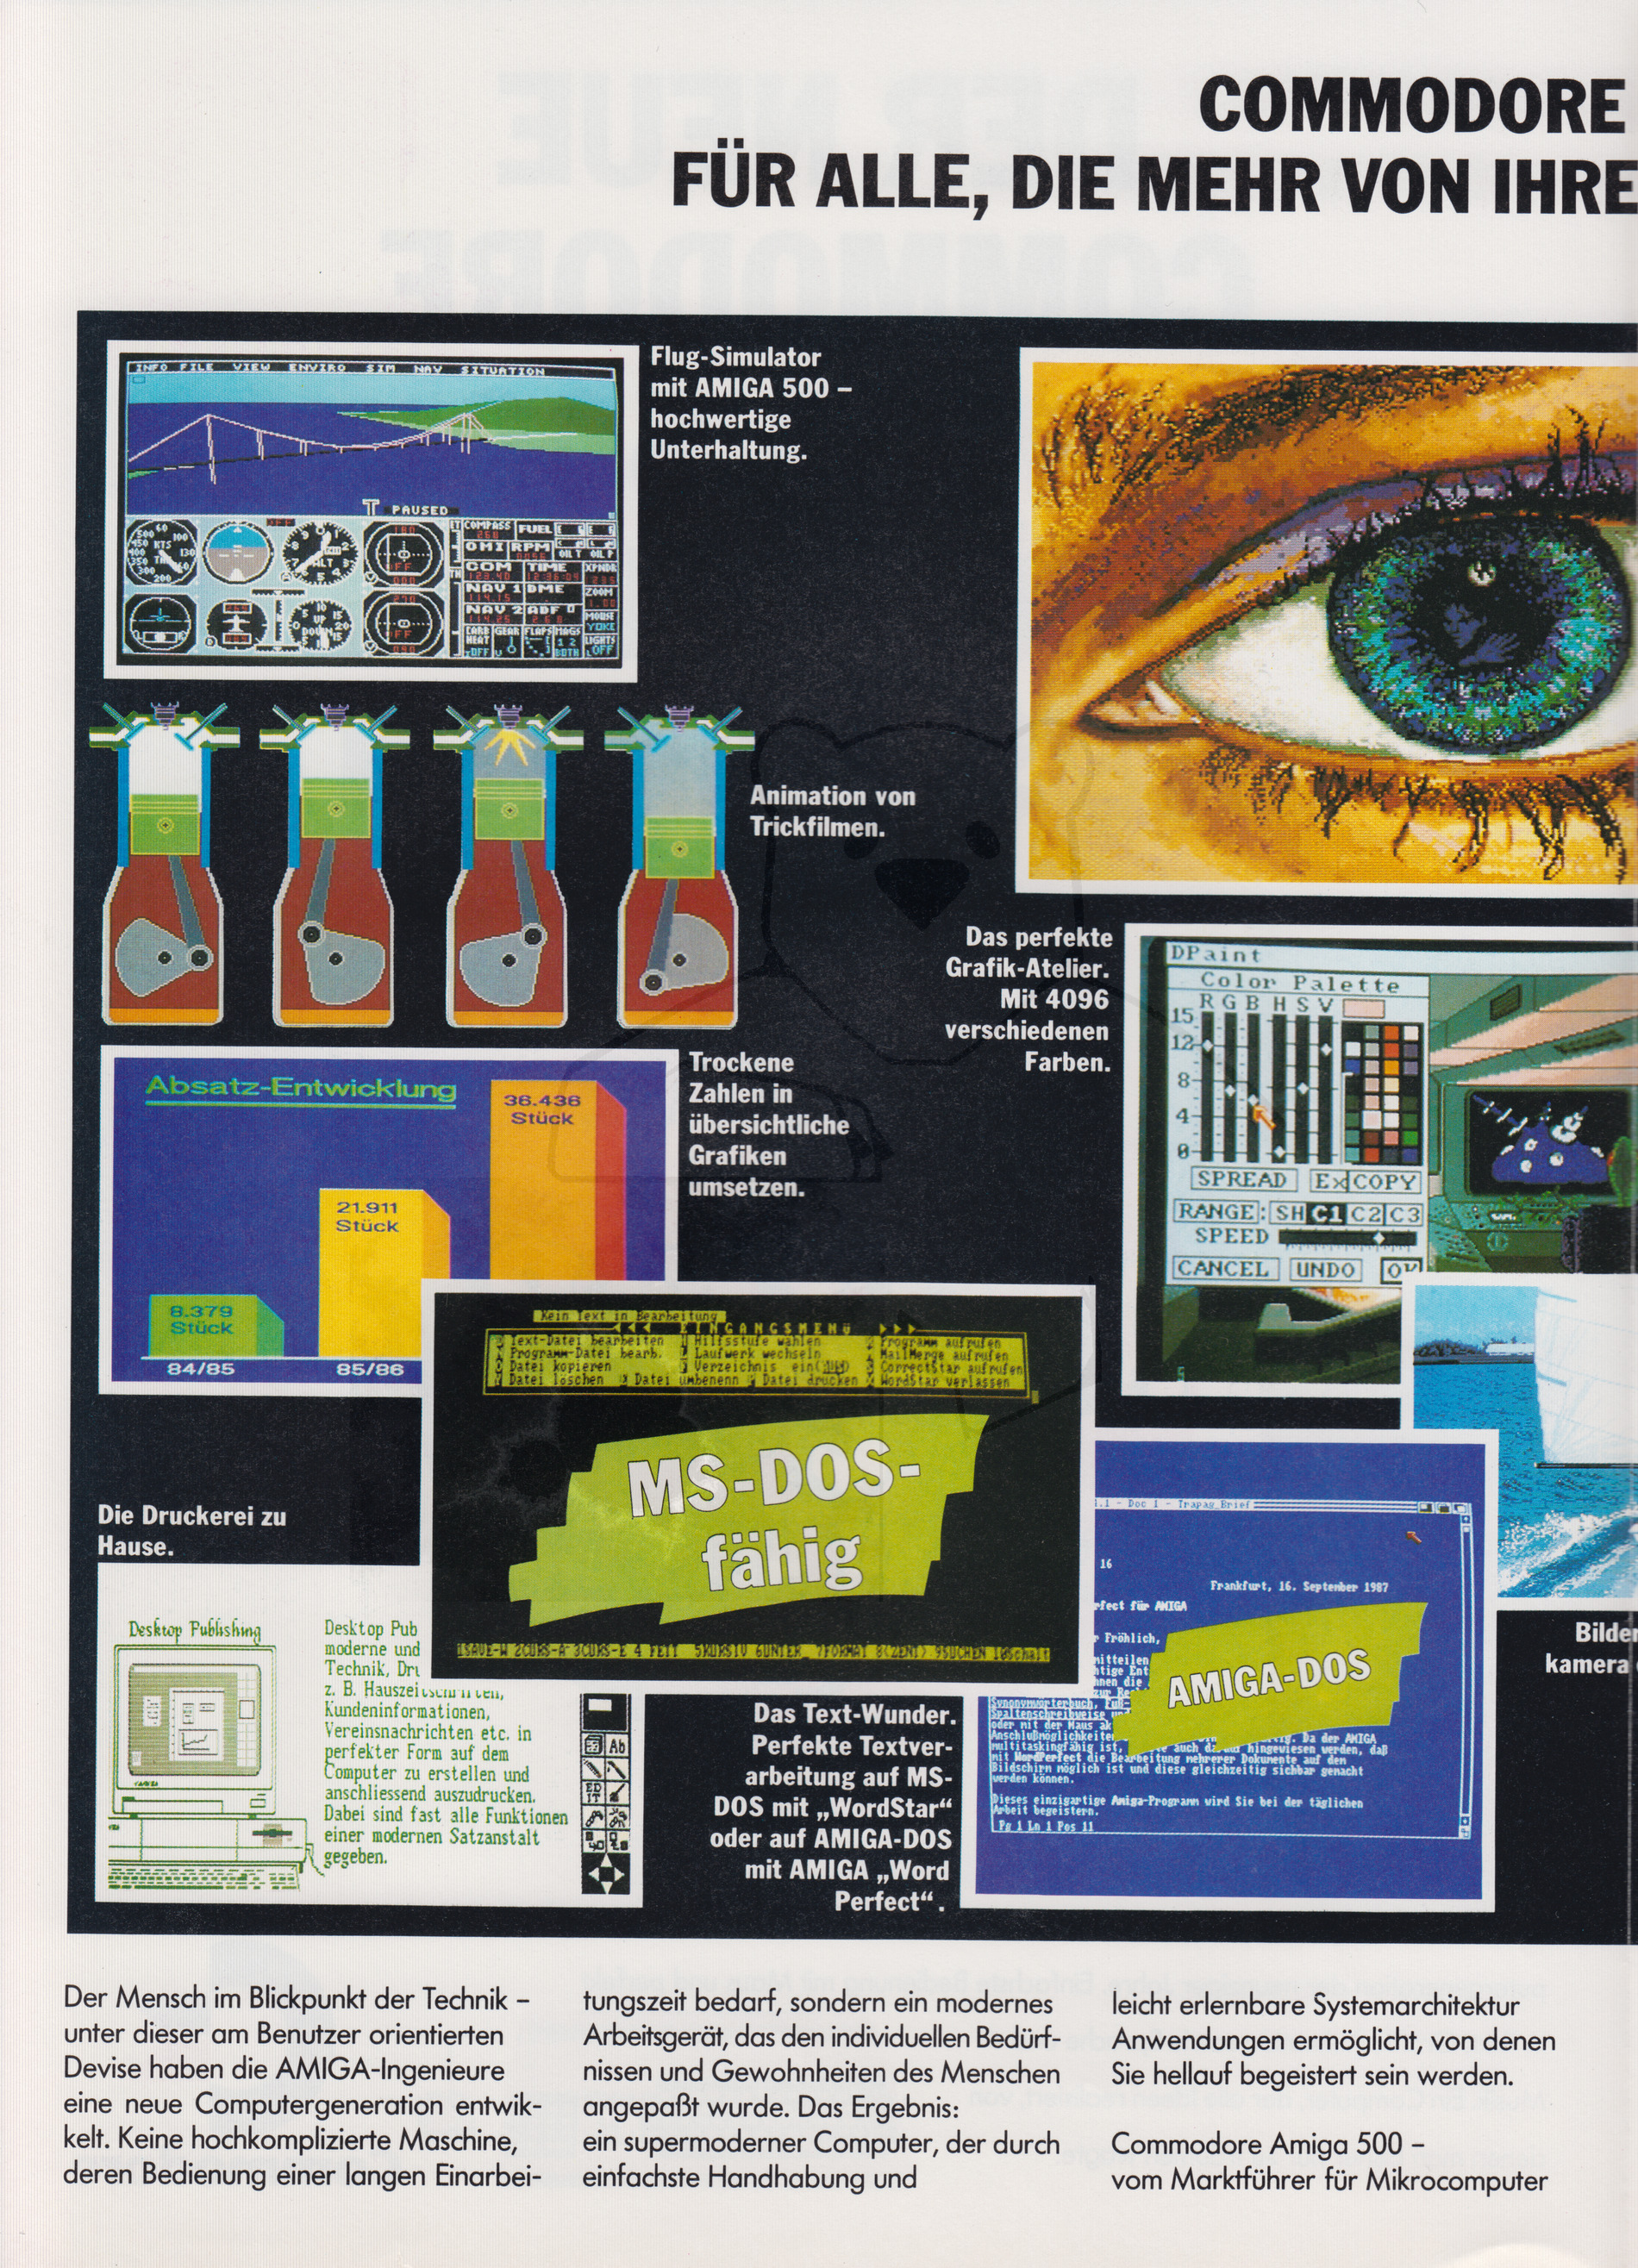 Commodore Werbeflyer "Commodore Amiga Fever", Seite 2